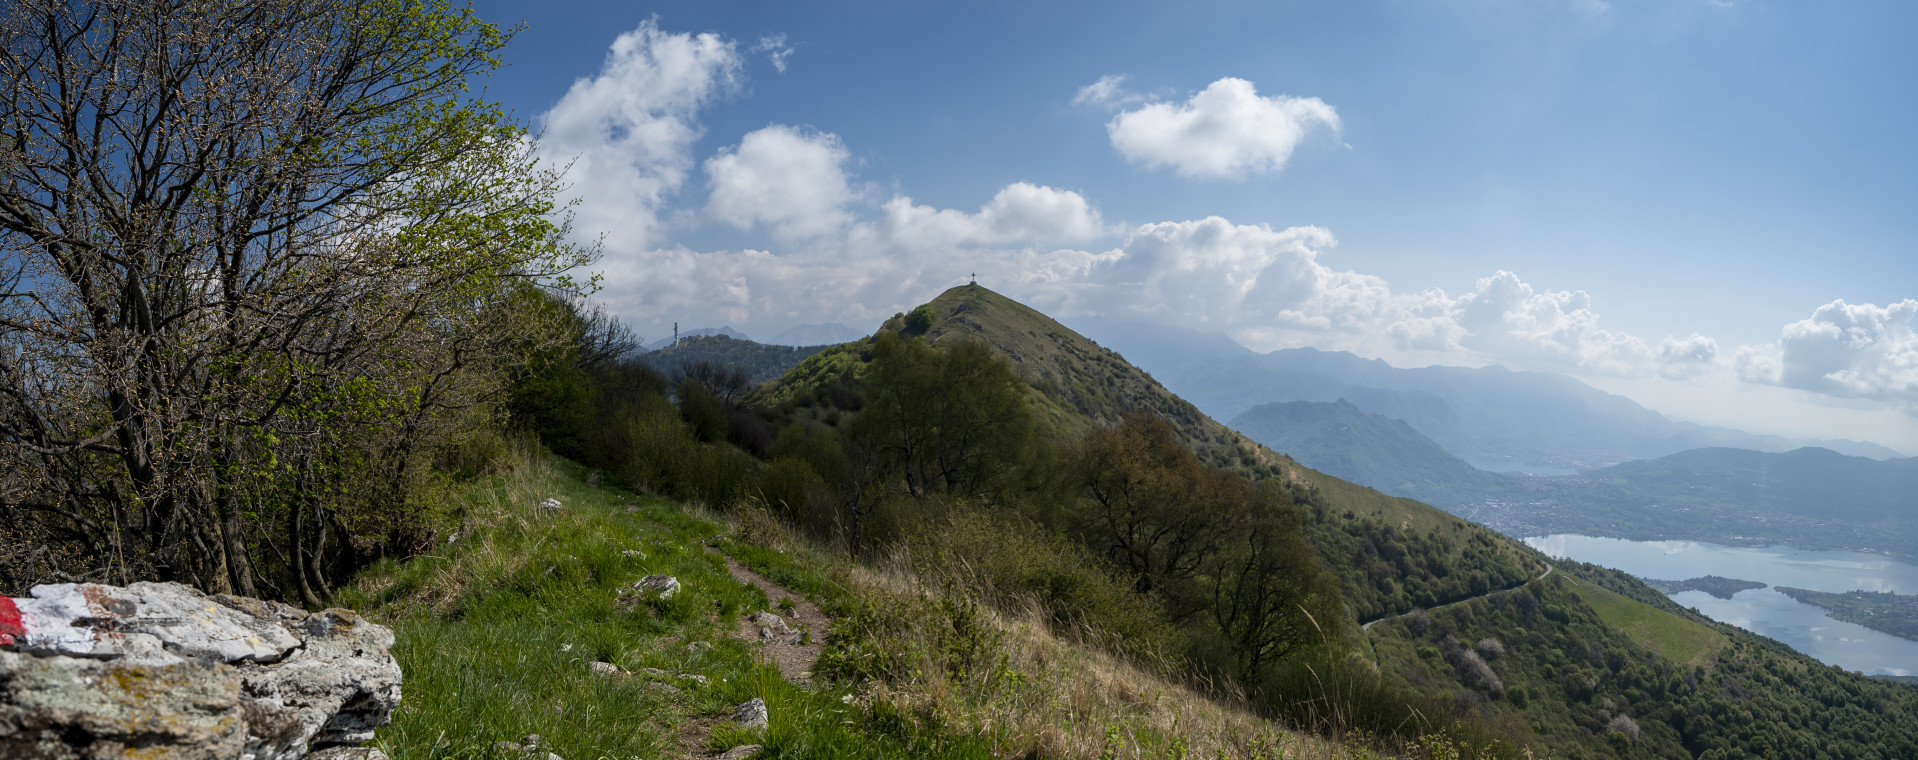 Il Monte Cornizzolo in primo piano e sullo sfondo il Monte Rai.